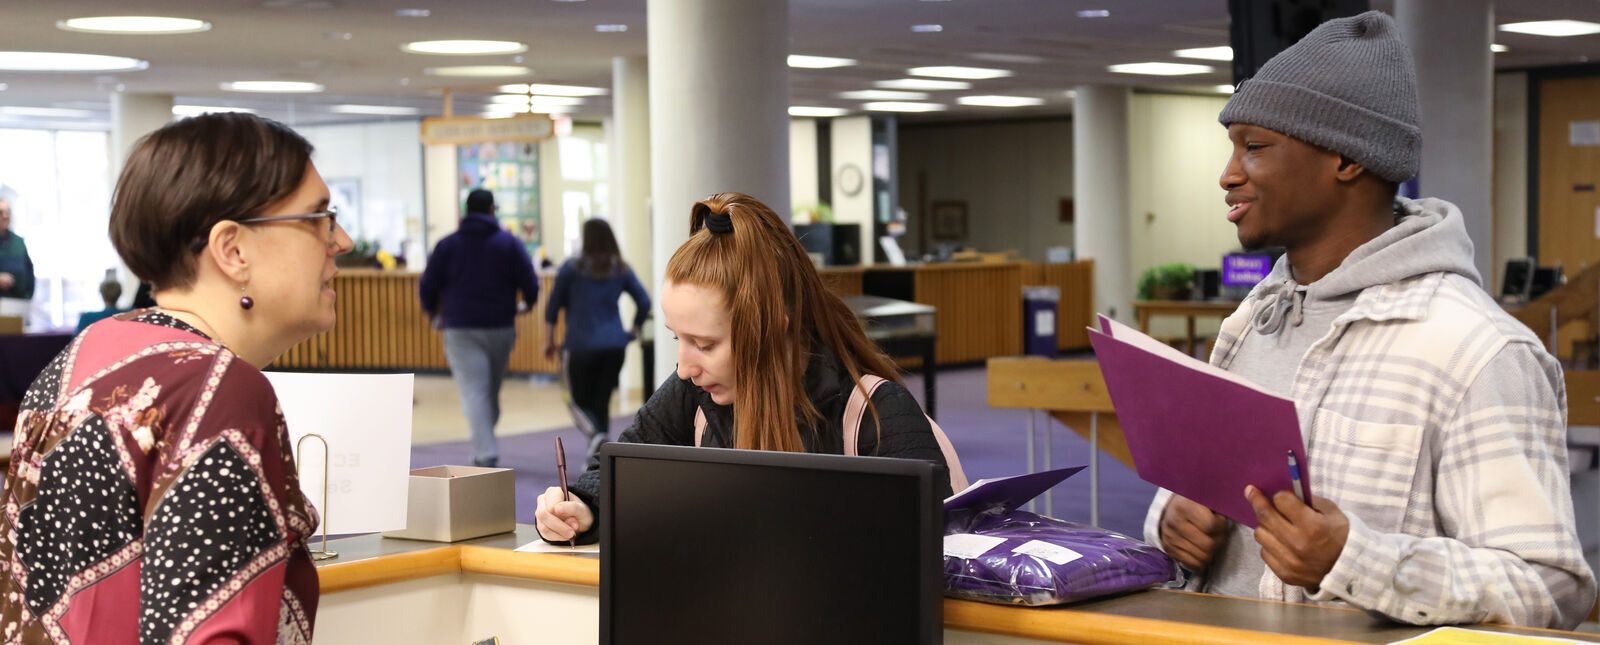 甘尼特-特里普图书馆就业服务台的柜台上，一名女学生正在填写表格，一名男学生正在与就业服务台的工作人员交谈